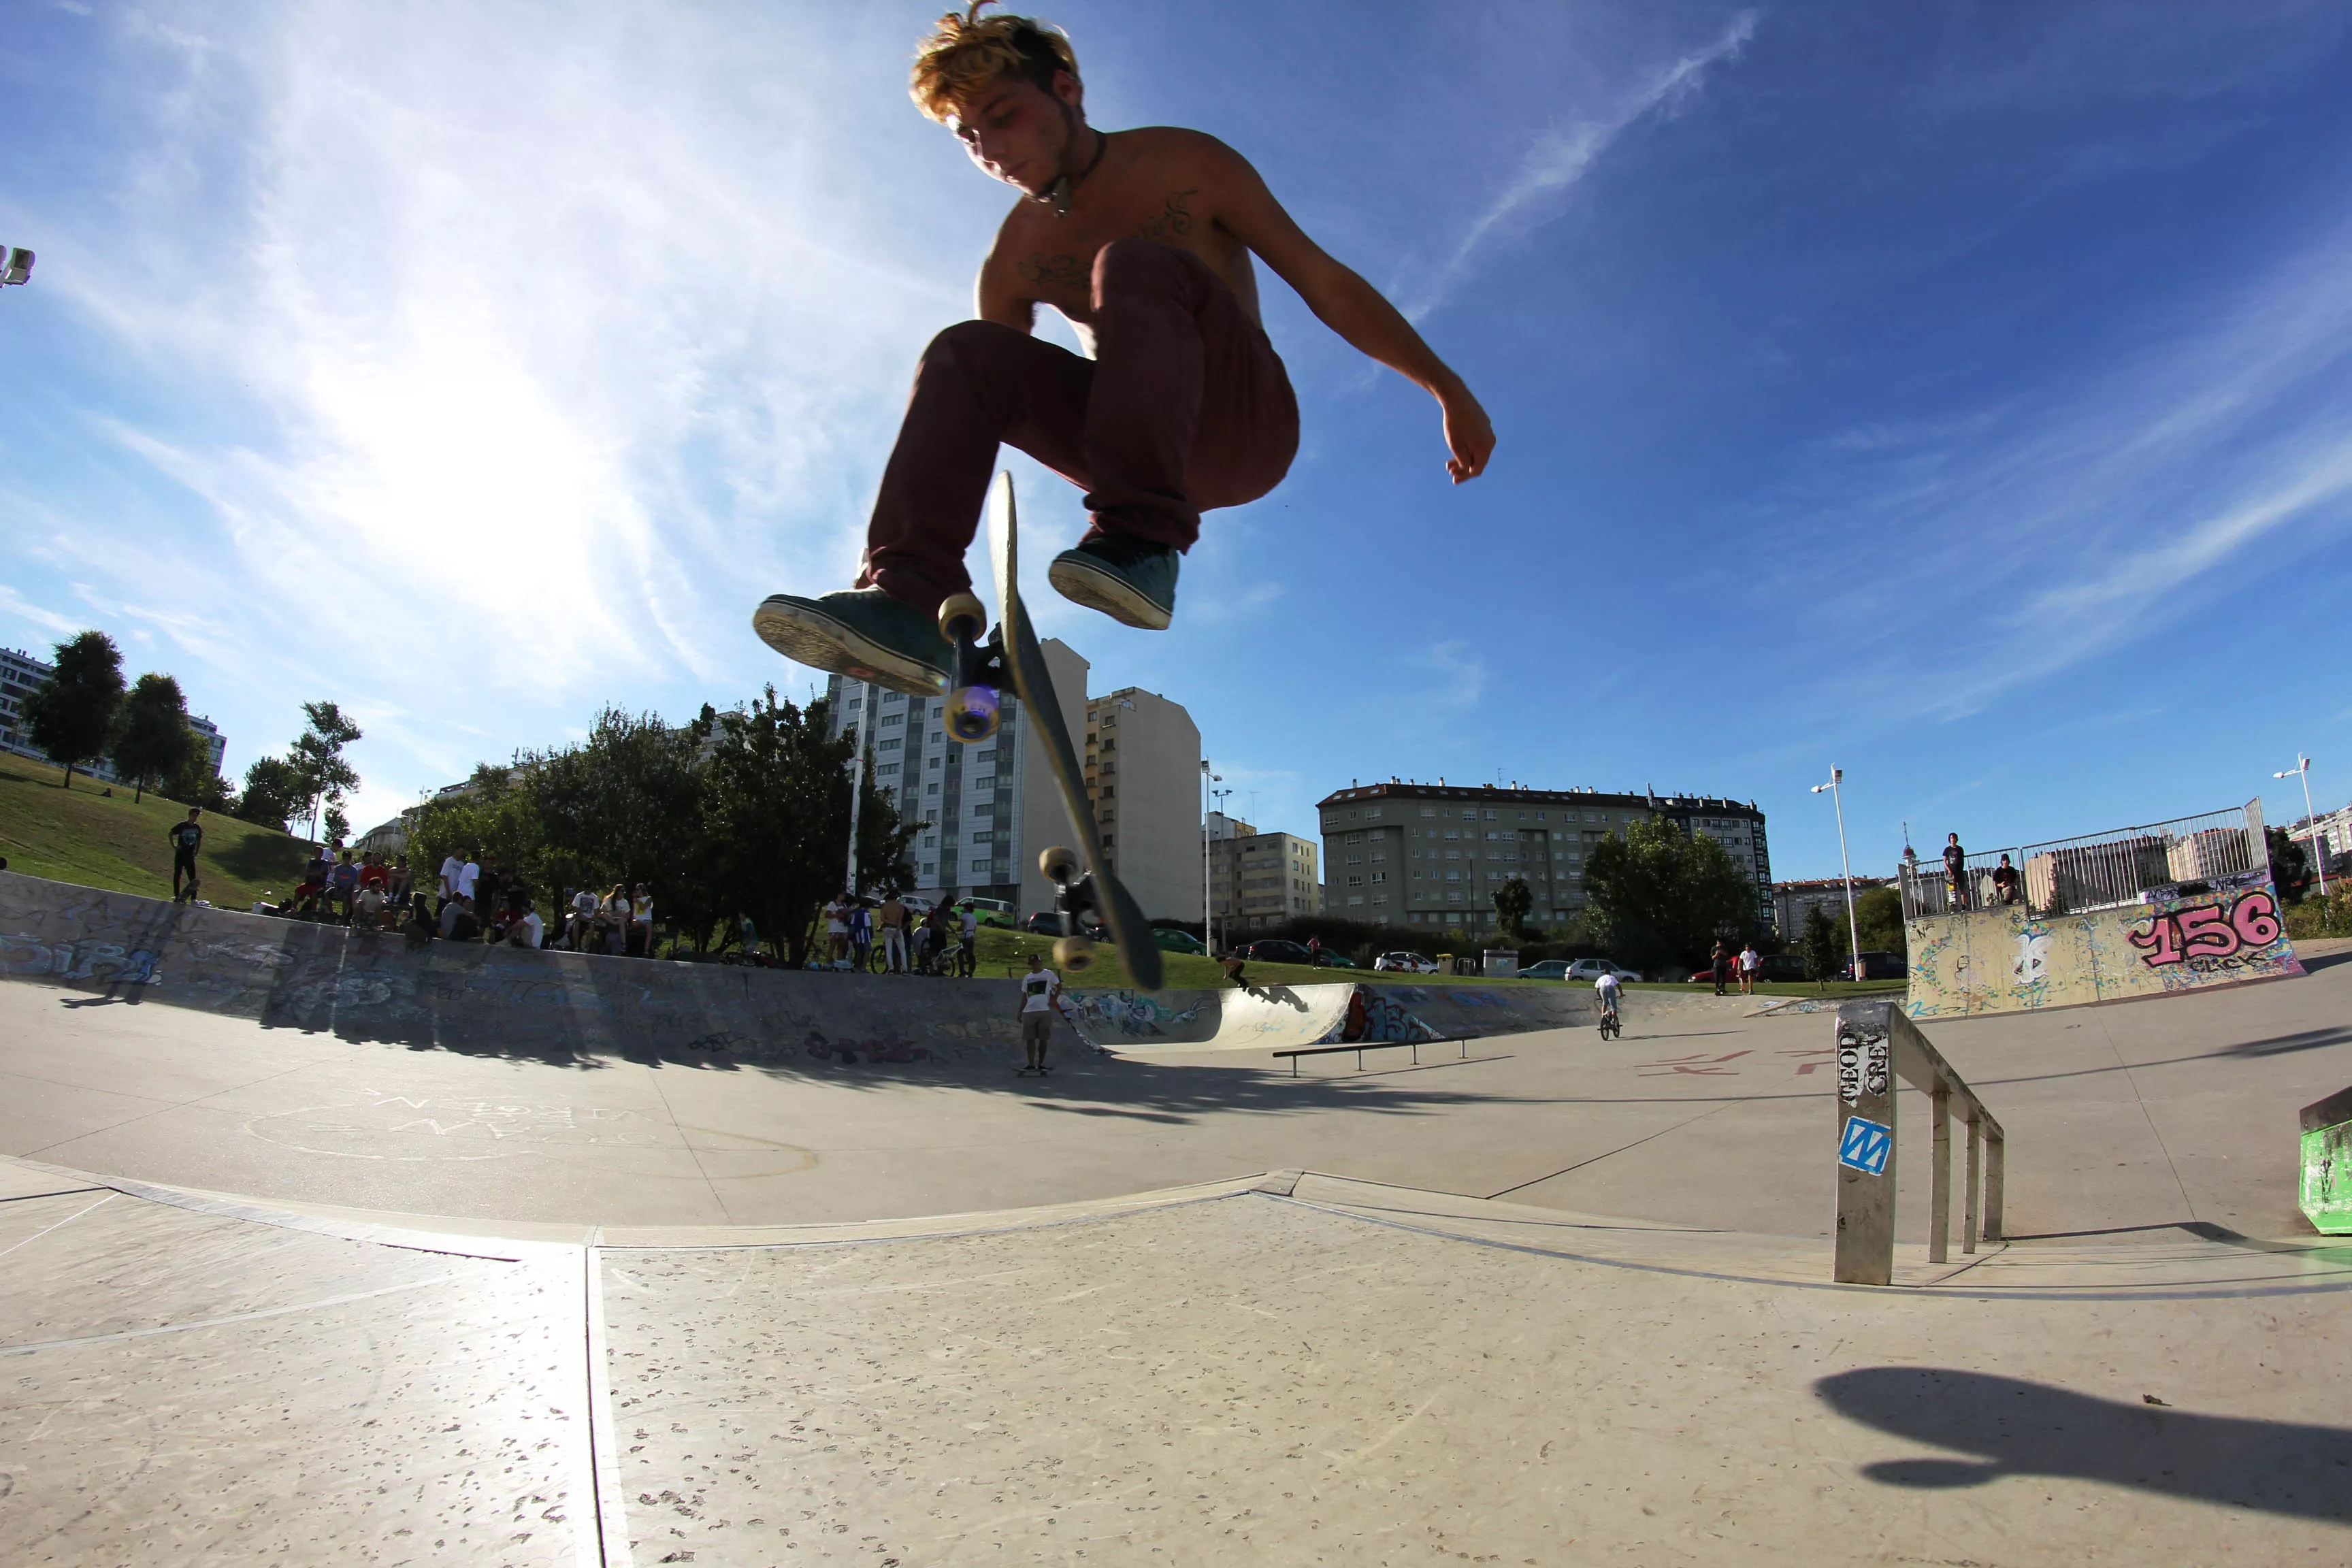 PTG Skatepark in Poland, Europe | Skateboarding - Rated 4.4